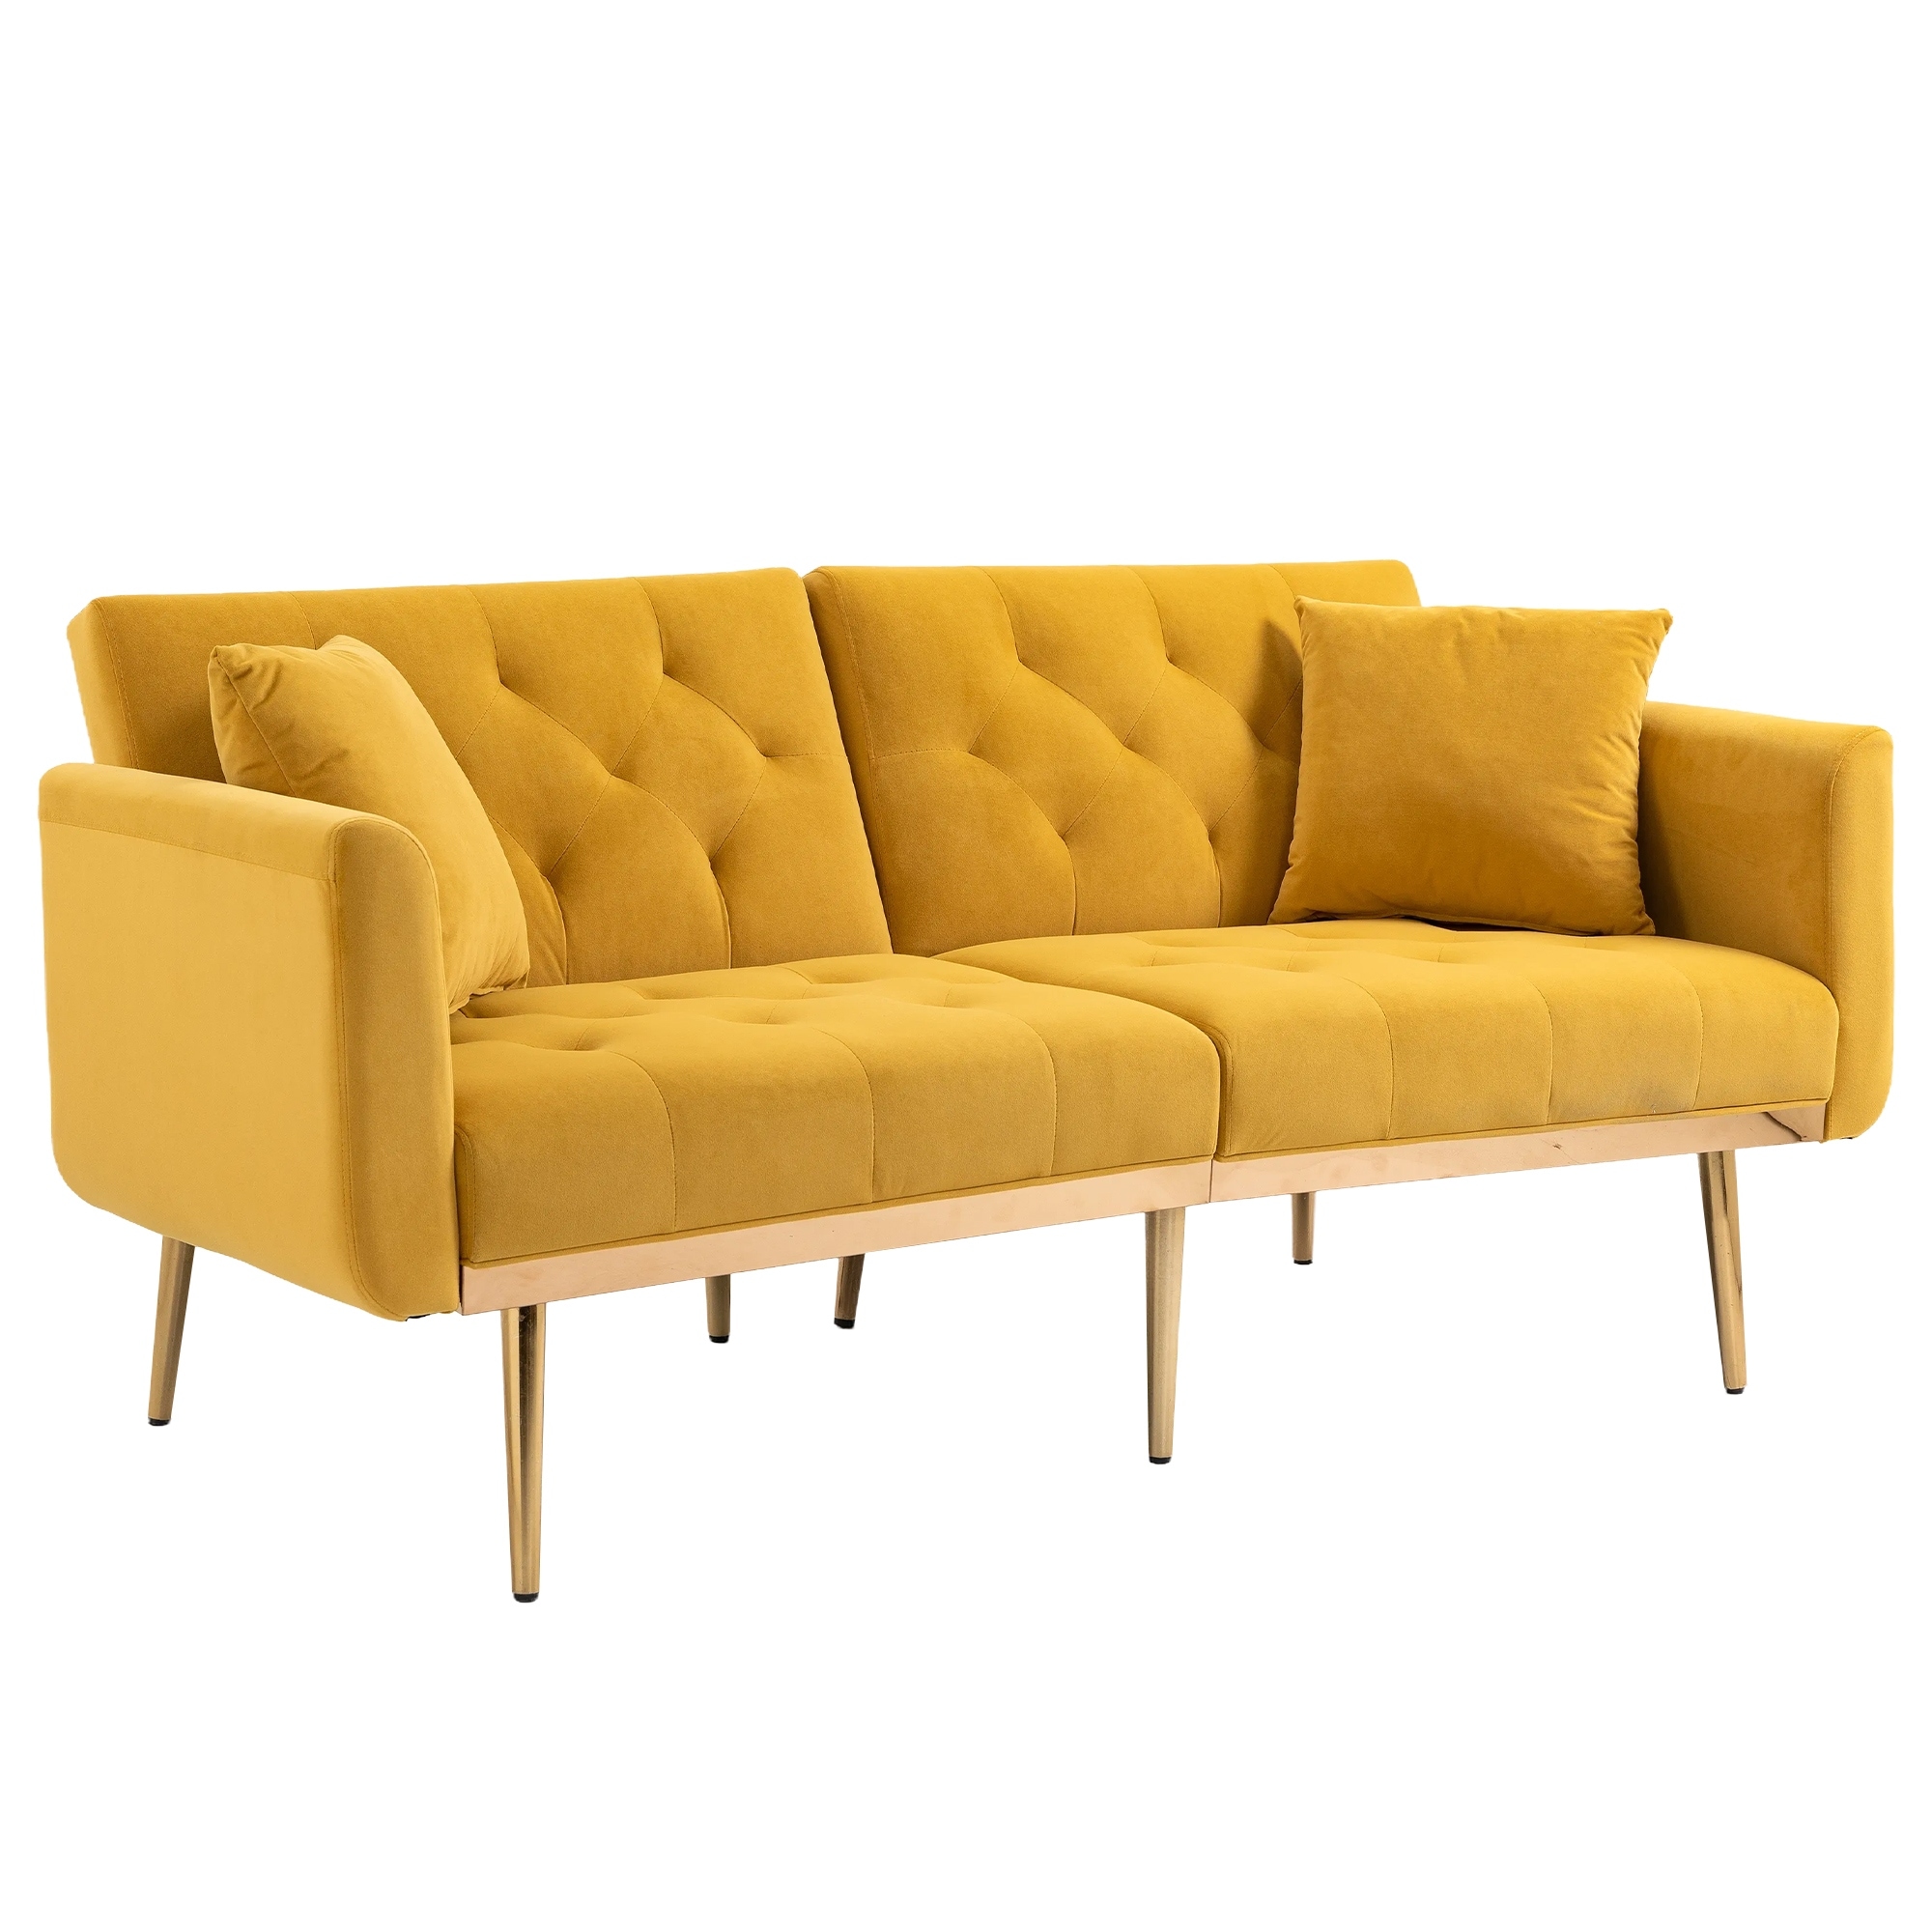 Velvet Upholstery Loveseat Sleeper Sofa W/ Metal Legs  Mustard